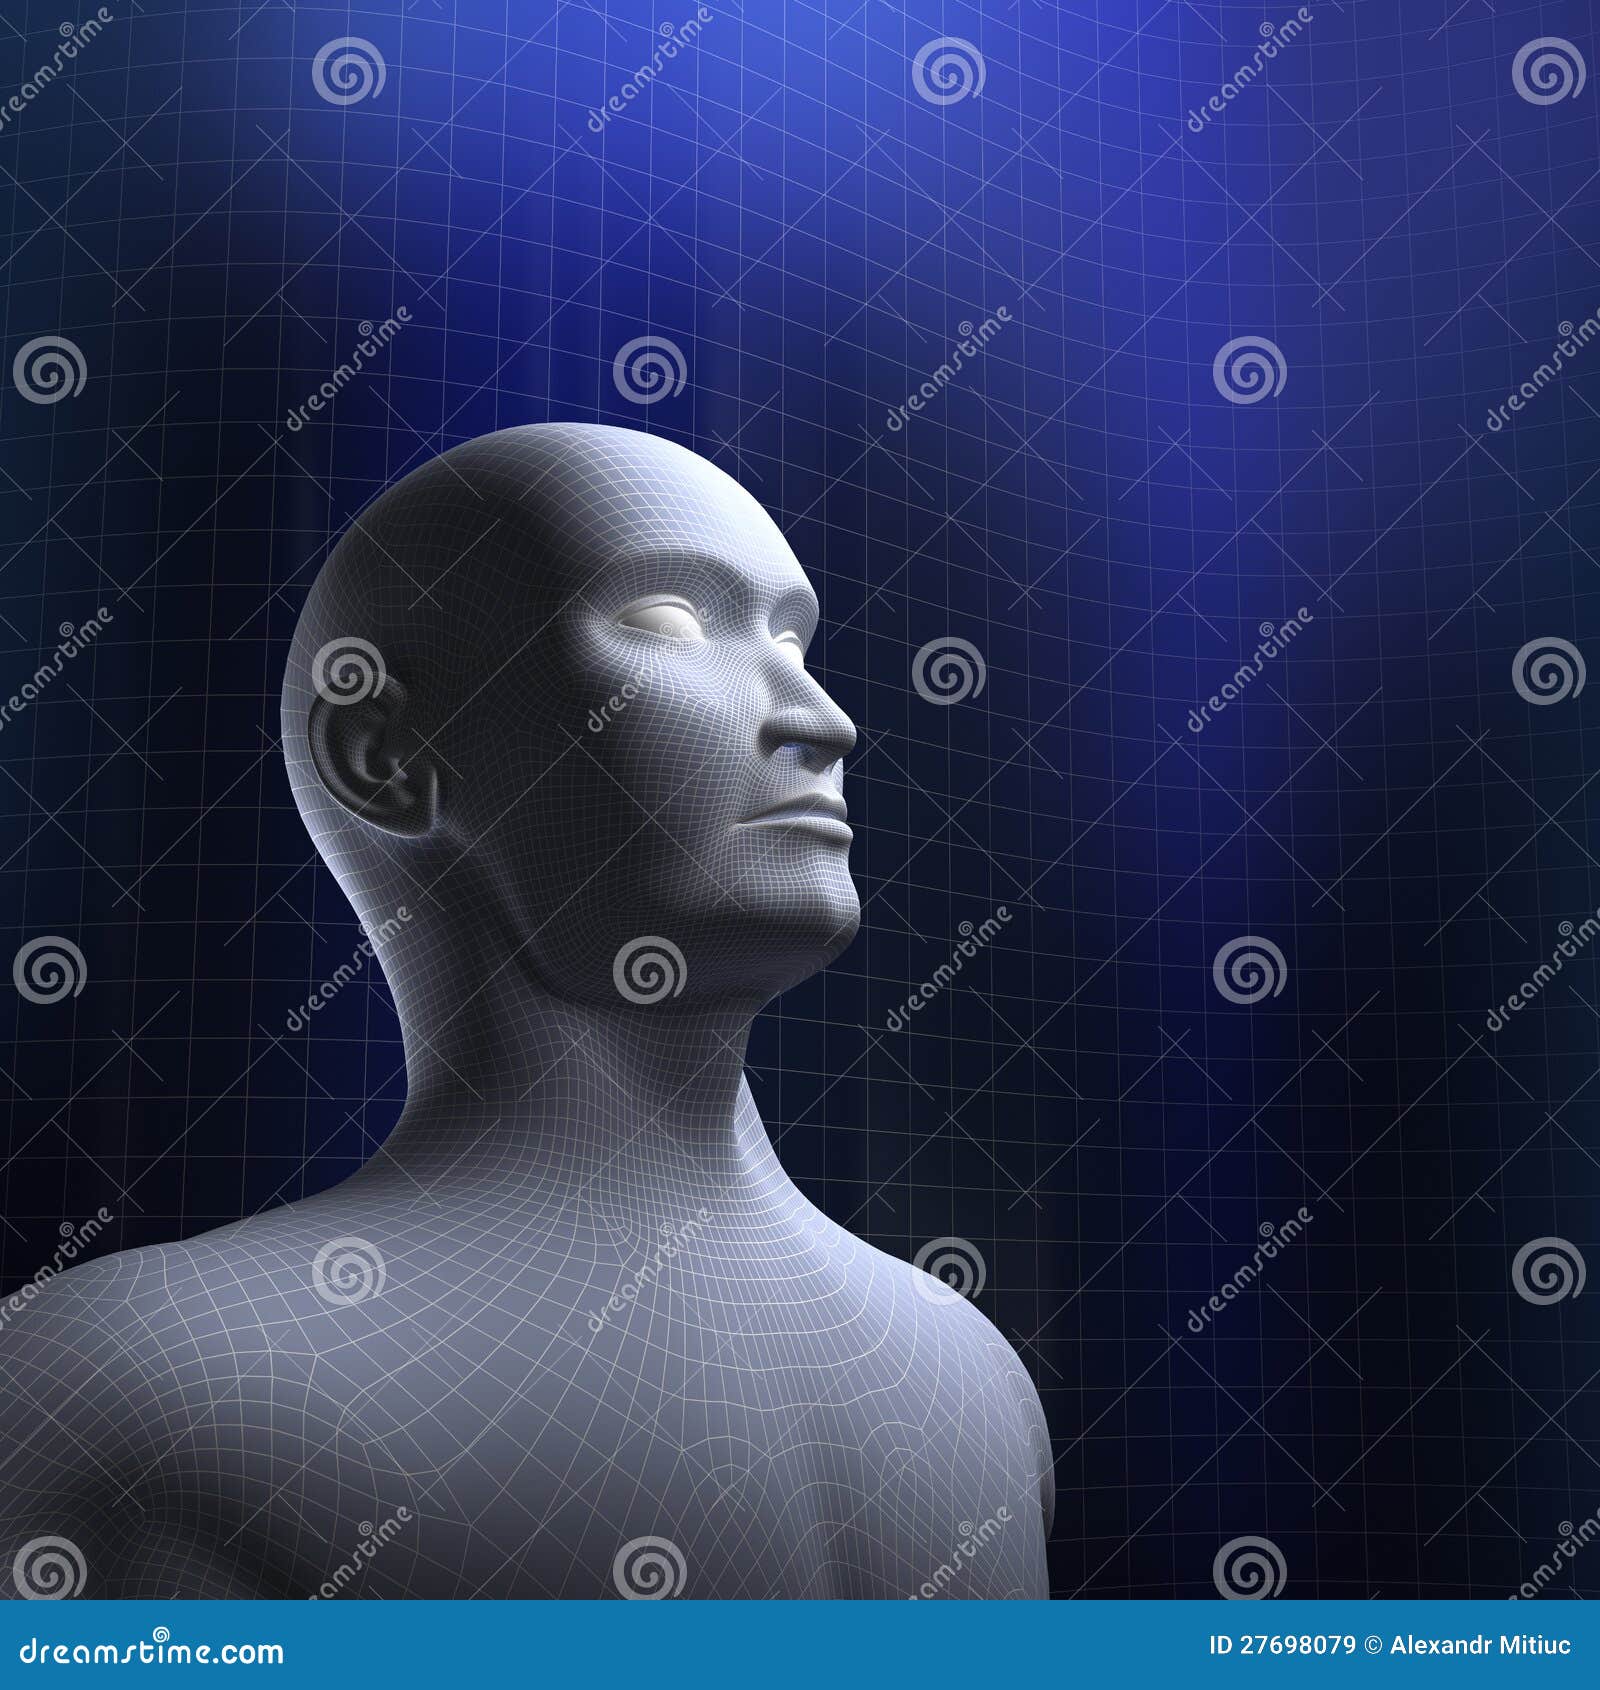 Menselijke hoofddraadwijze. Menselijke hoofddraad model en blauwe achtergrond